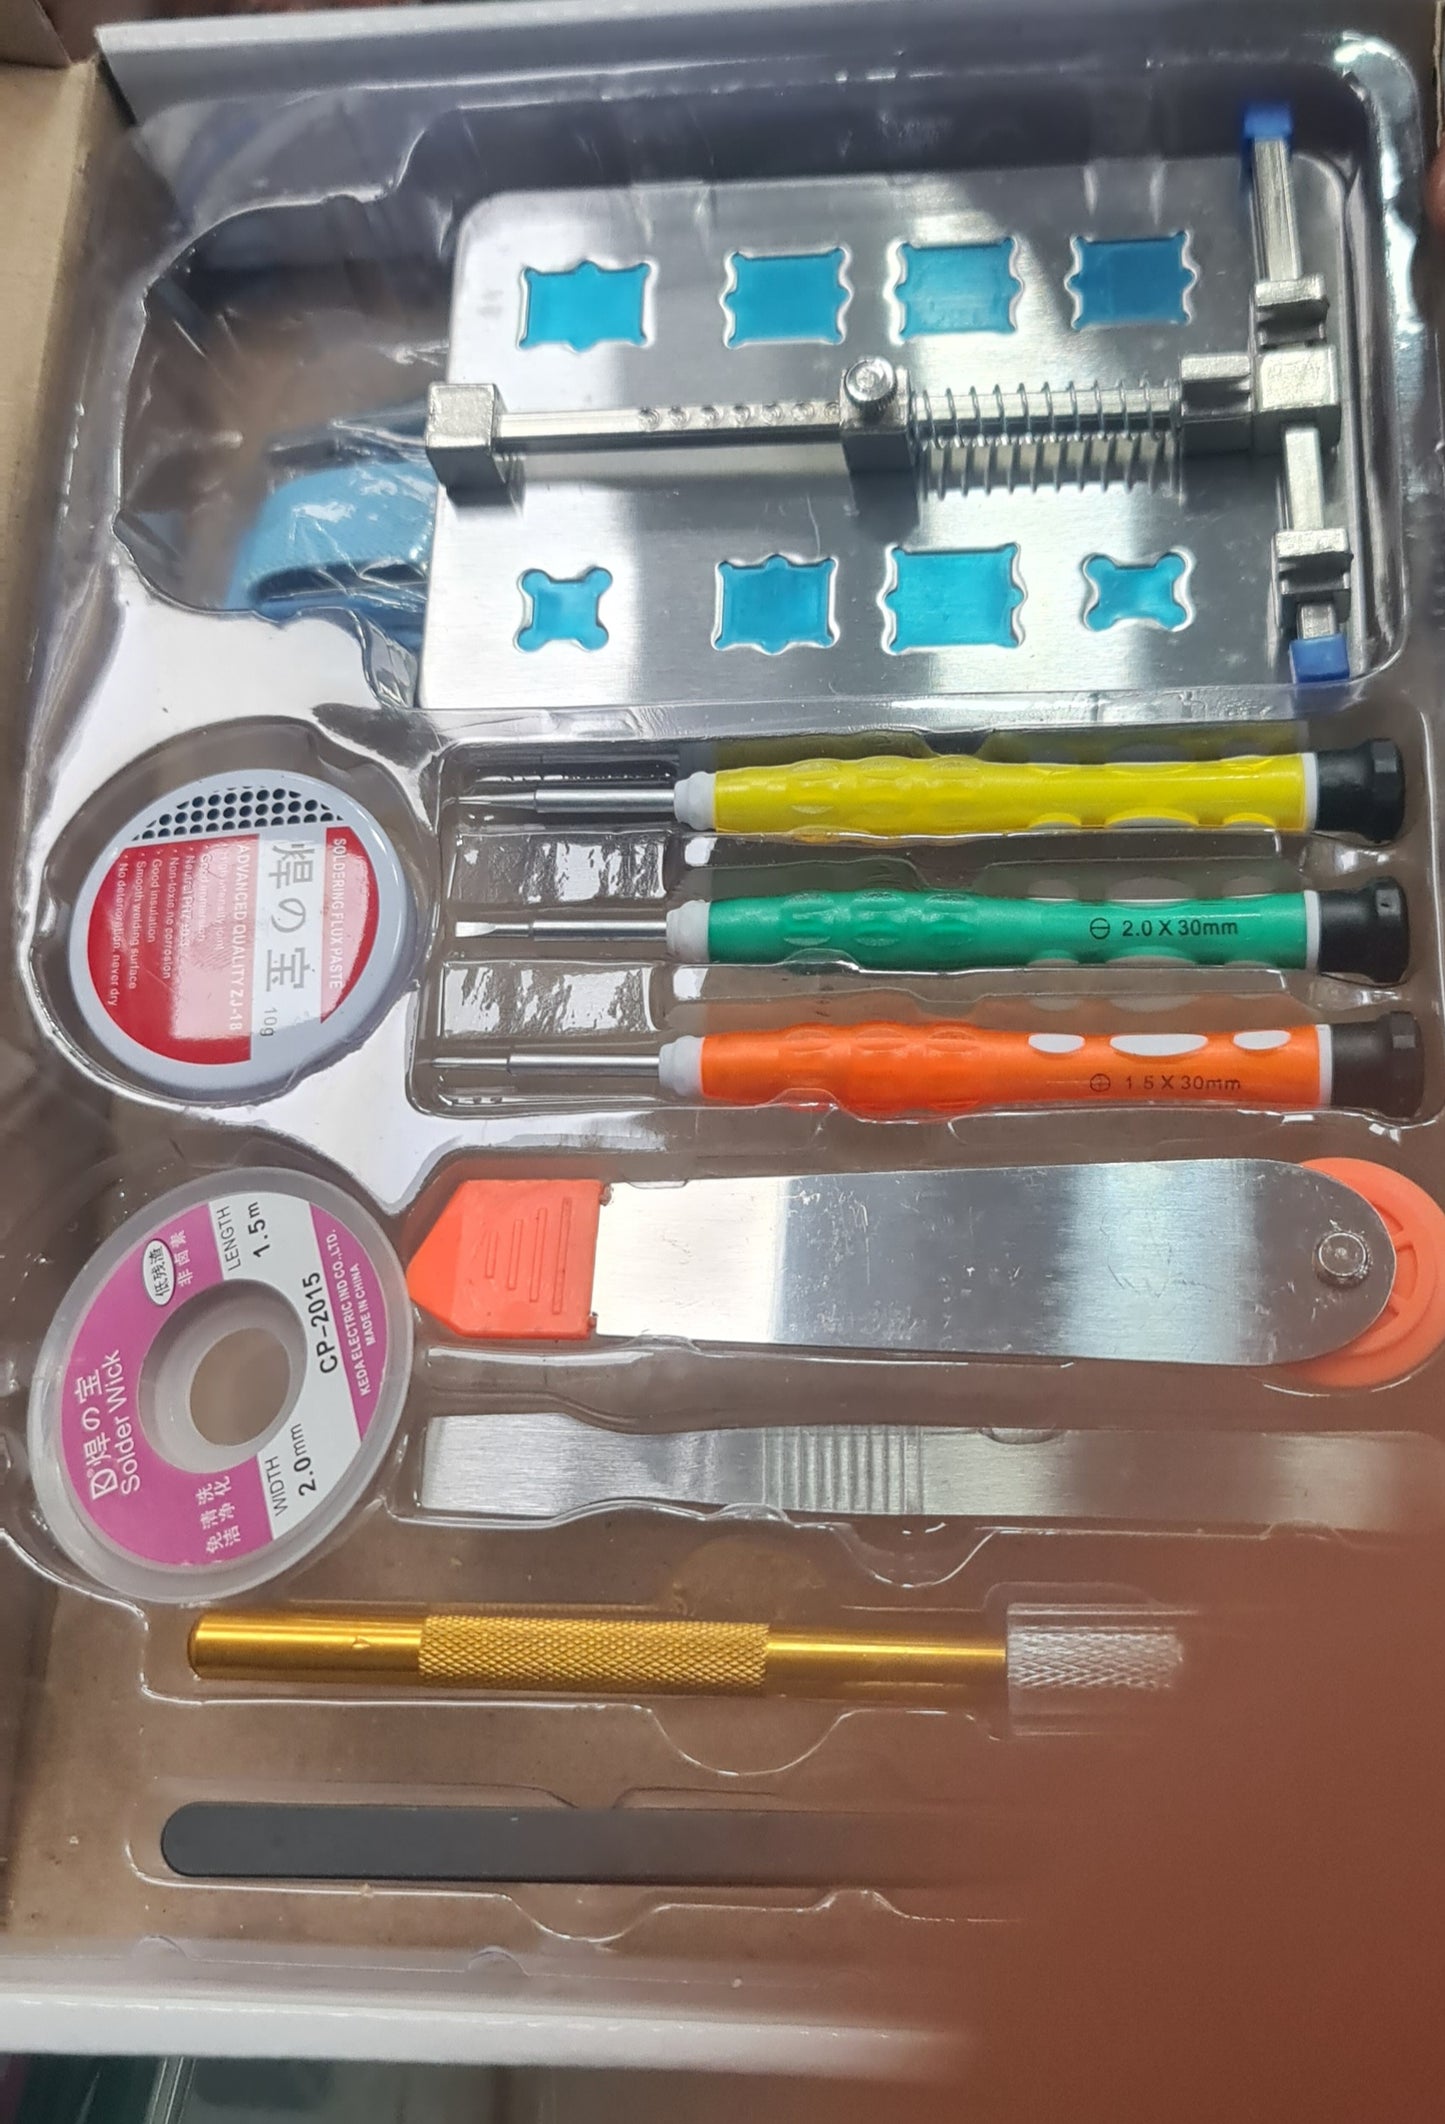 13-in-1 BGA Repair Tool Kit - Soldering Paste, Cutter, Screwdrivers, Tweezers, and More